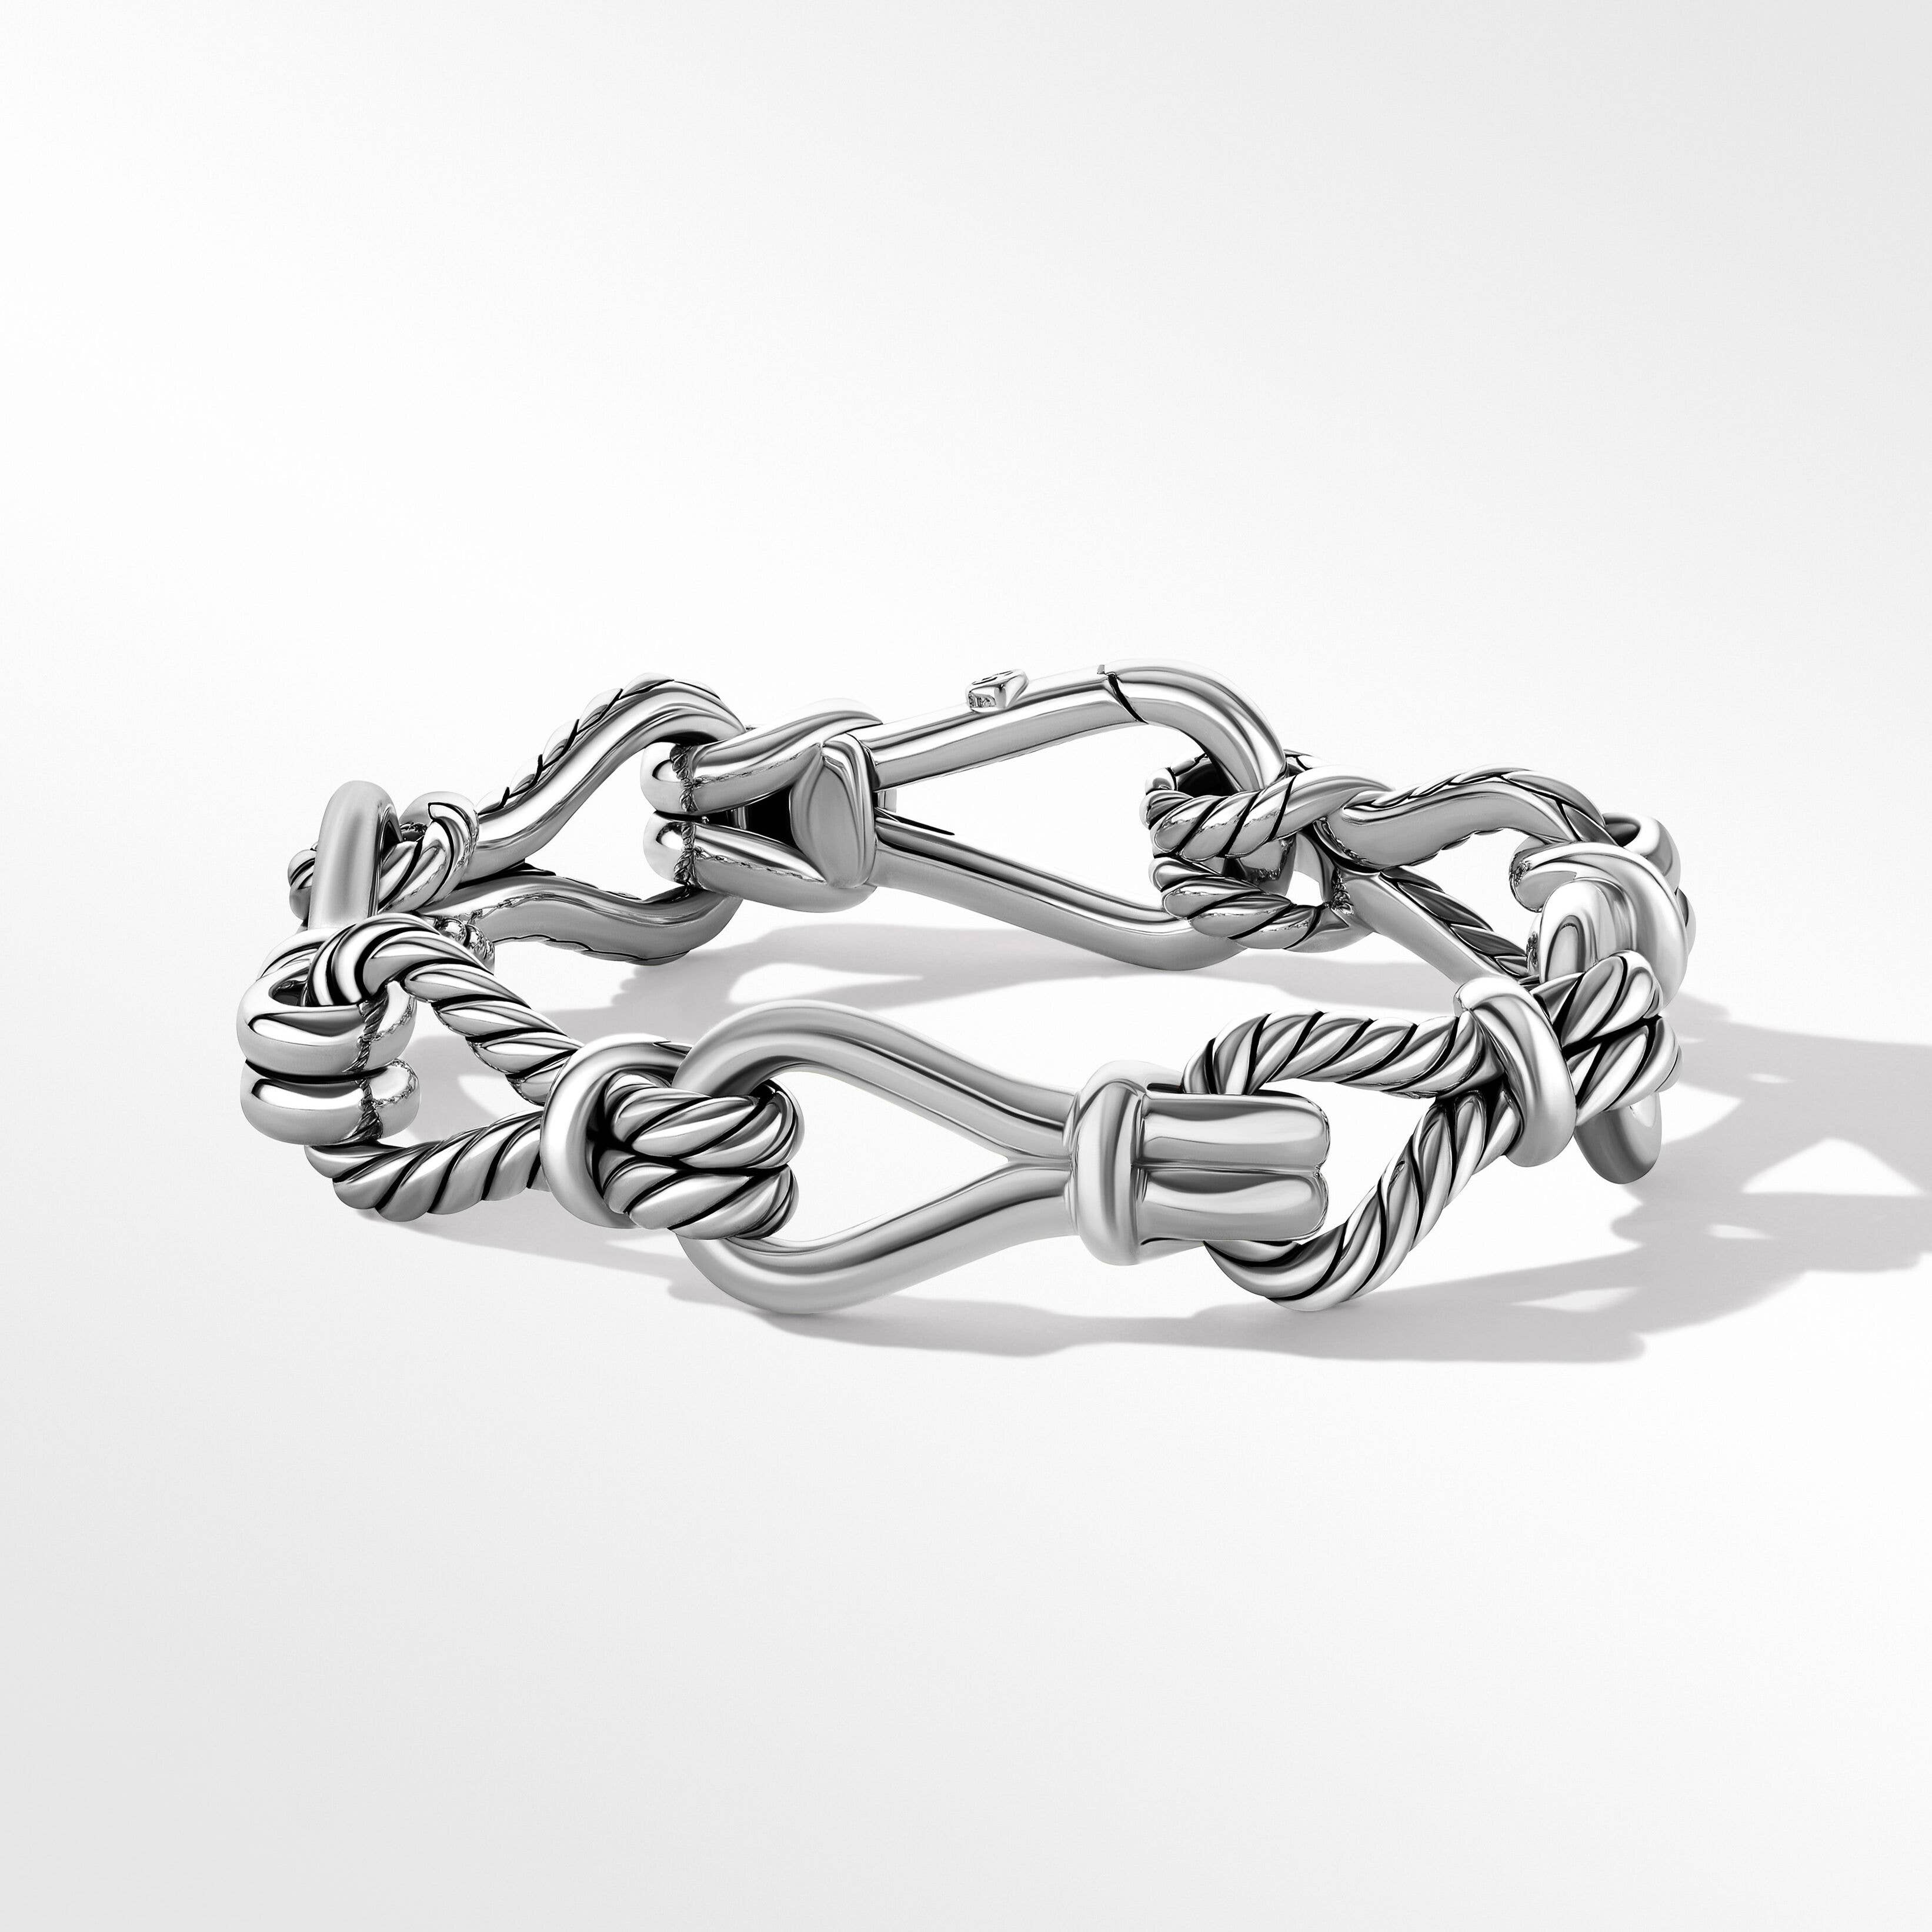 Thoroughbred Loop Chain Bracelet